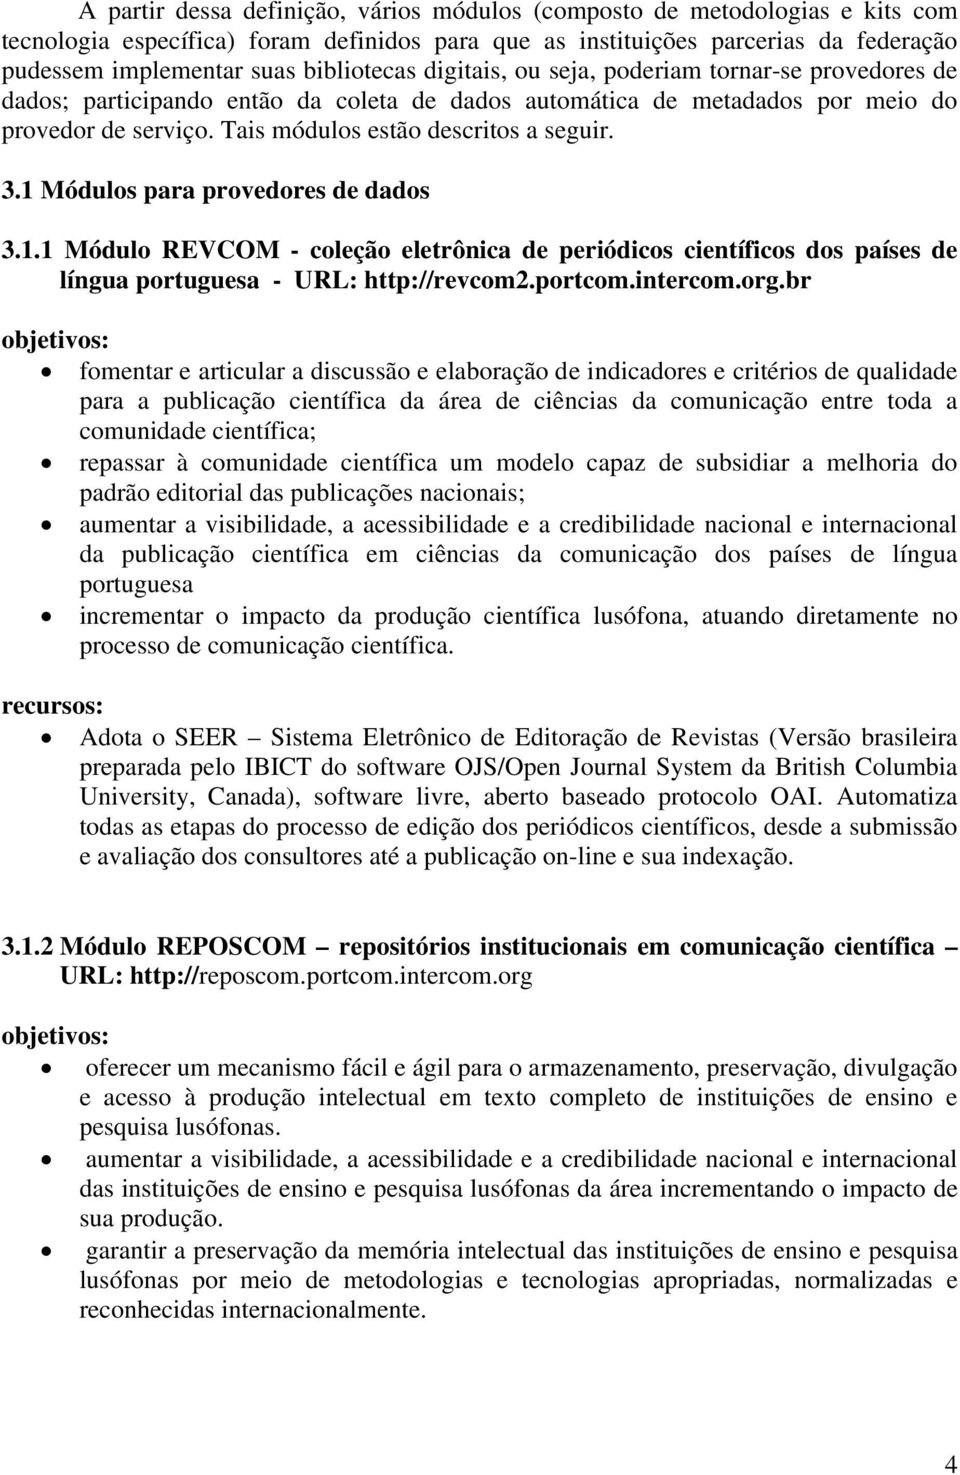 Tais módulos estão descritos a seguir. 3.1 Módulos para provedores de dados 3.1.1 Módulo REVCOM - coleção eletrônica de periódicos científicos dos países de língua portuguesa - URL: http://revcom2.